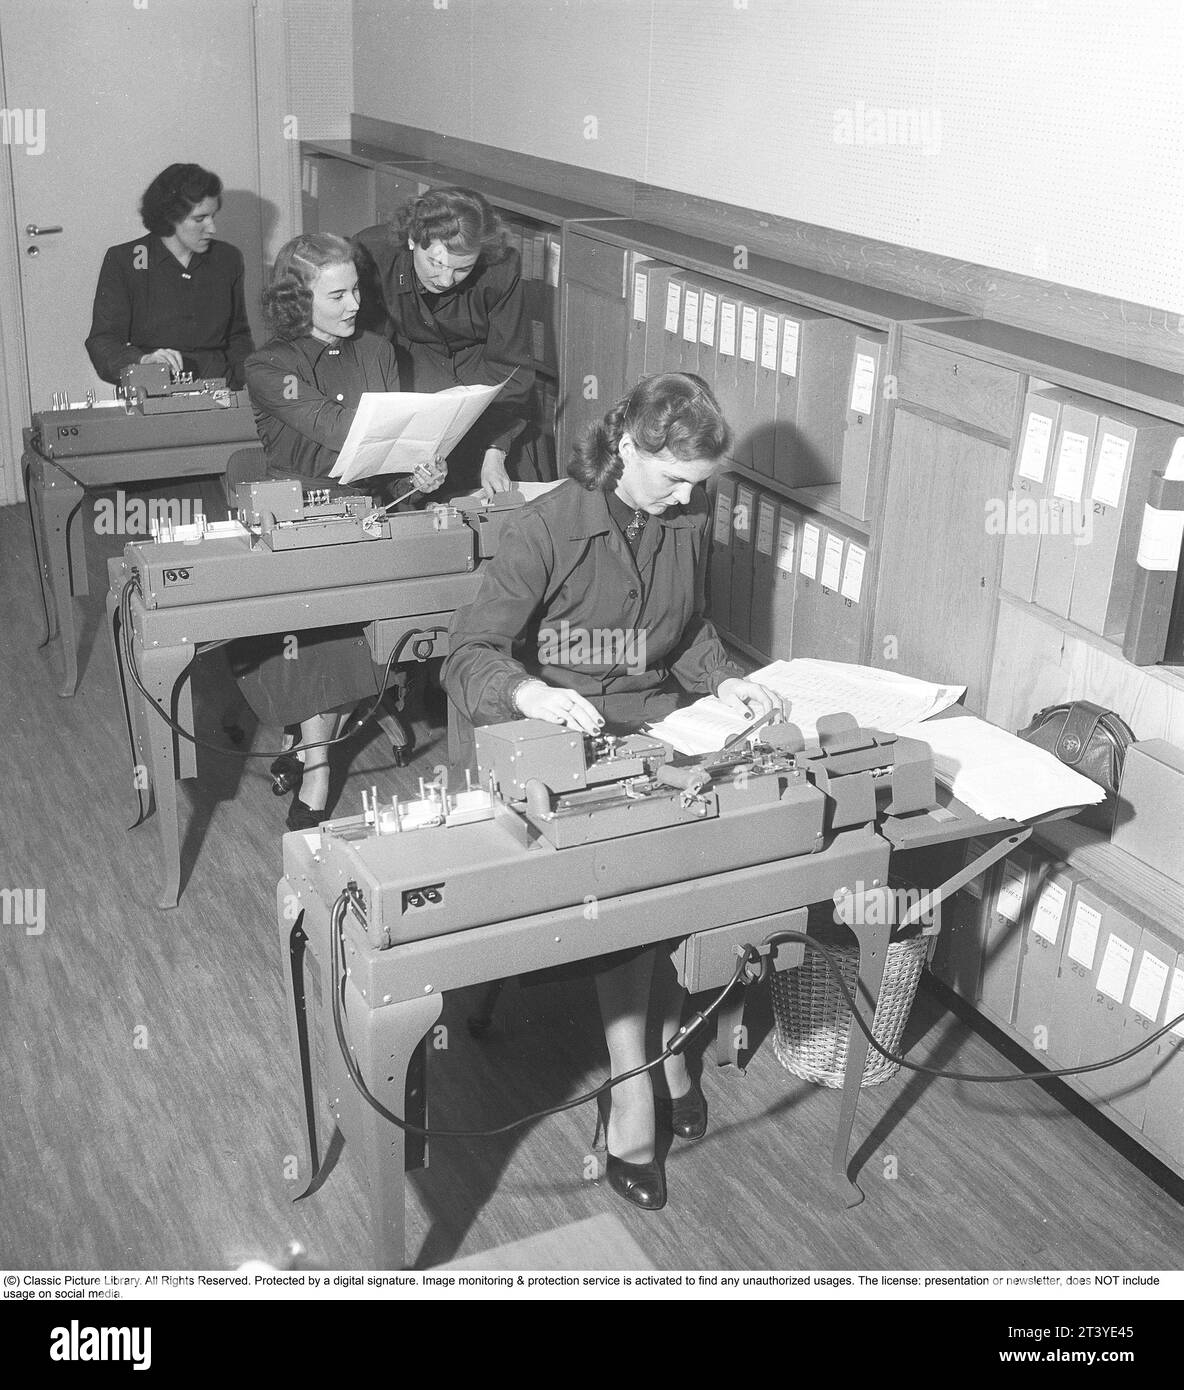 In den 1950er Jahren Weibliche Angestellte an Punschkarten-Maschinen geben Informationen ein, die in Punschkarten übertragen werden. Lochkarten waren ein Speichermedium, bei dem die Lochlöcher in der Papierkarte die Eingabeinformationen waren, und die Löcher und Informationen wurden dann von einer anderen Maschine, einem Lochkartenleser, gelesen und die Informationen dann organisiert oder gedruckt werden konnten. Schweden 1950. Kristoffersson Ref. BA87-8 Stockfoto